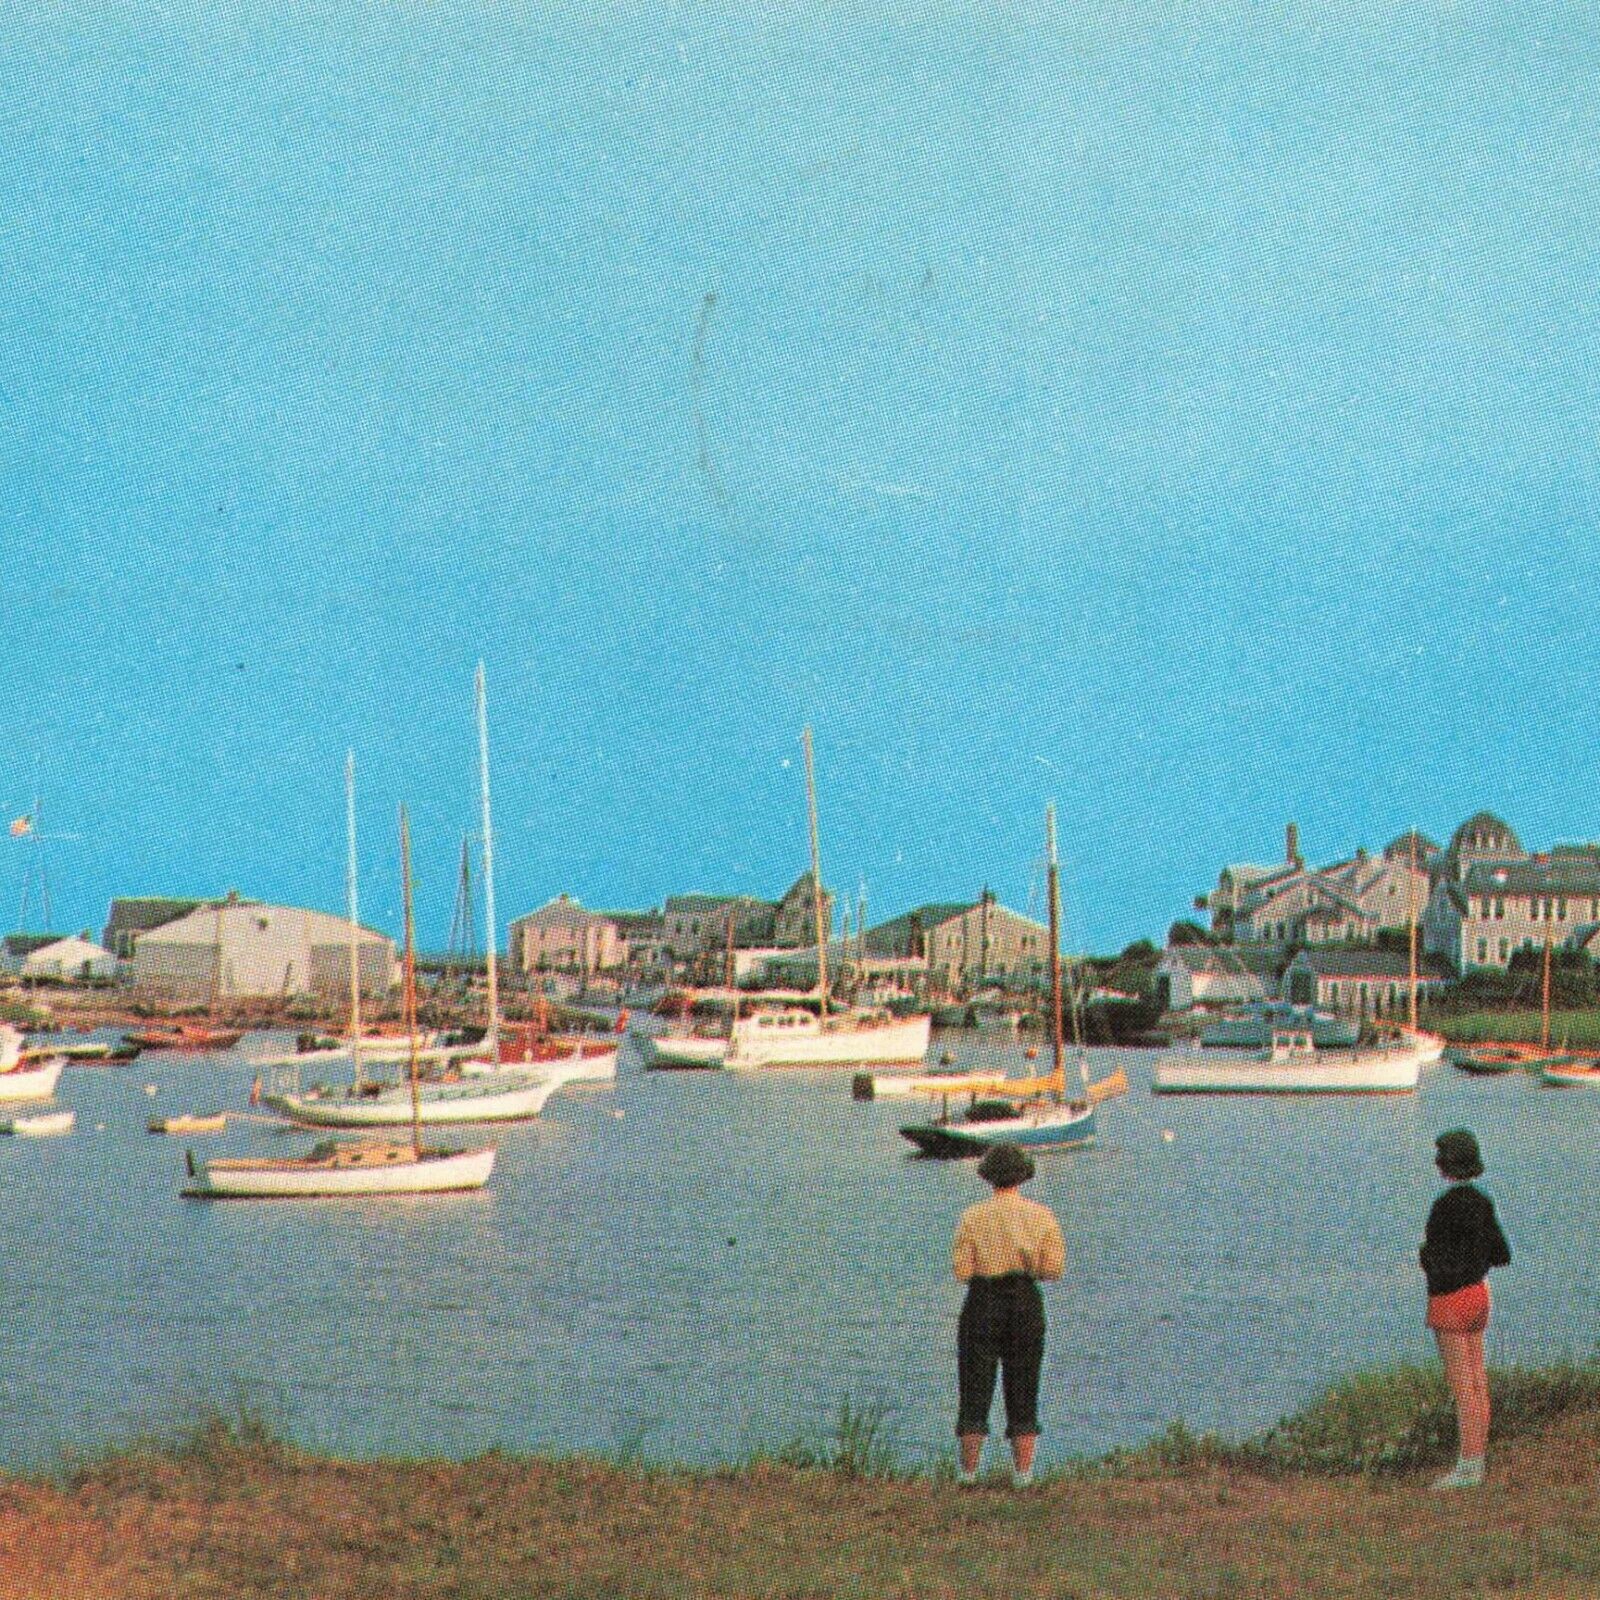 Cape Cod Massachusetts MA Harwichport Wychmere Harbor Boats Ephemera Postcard